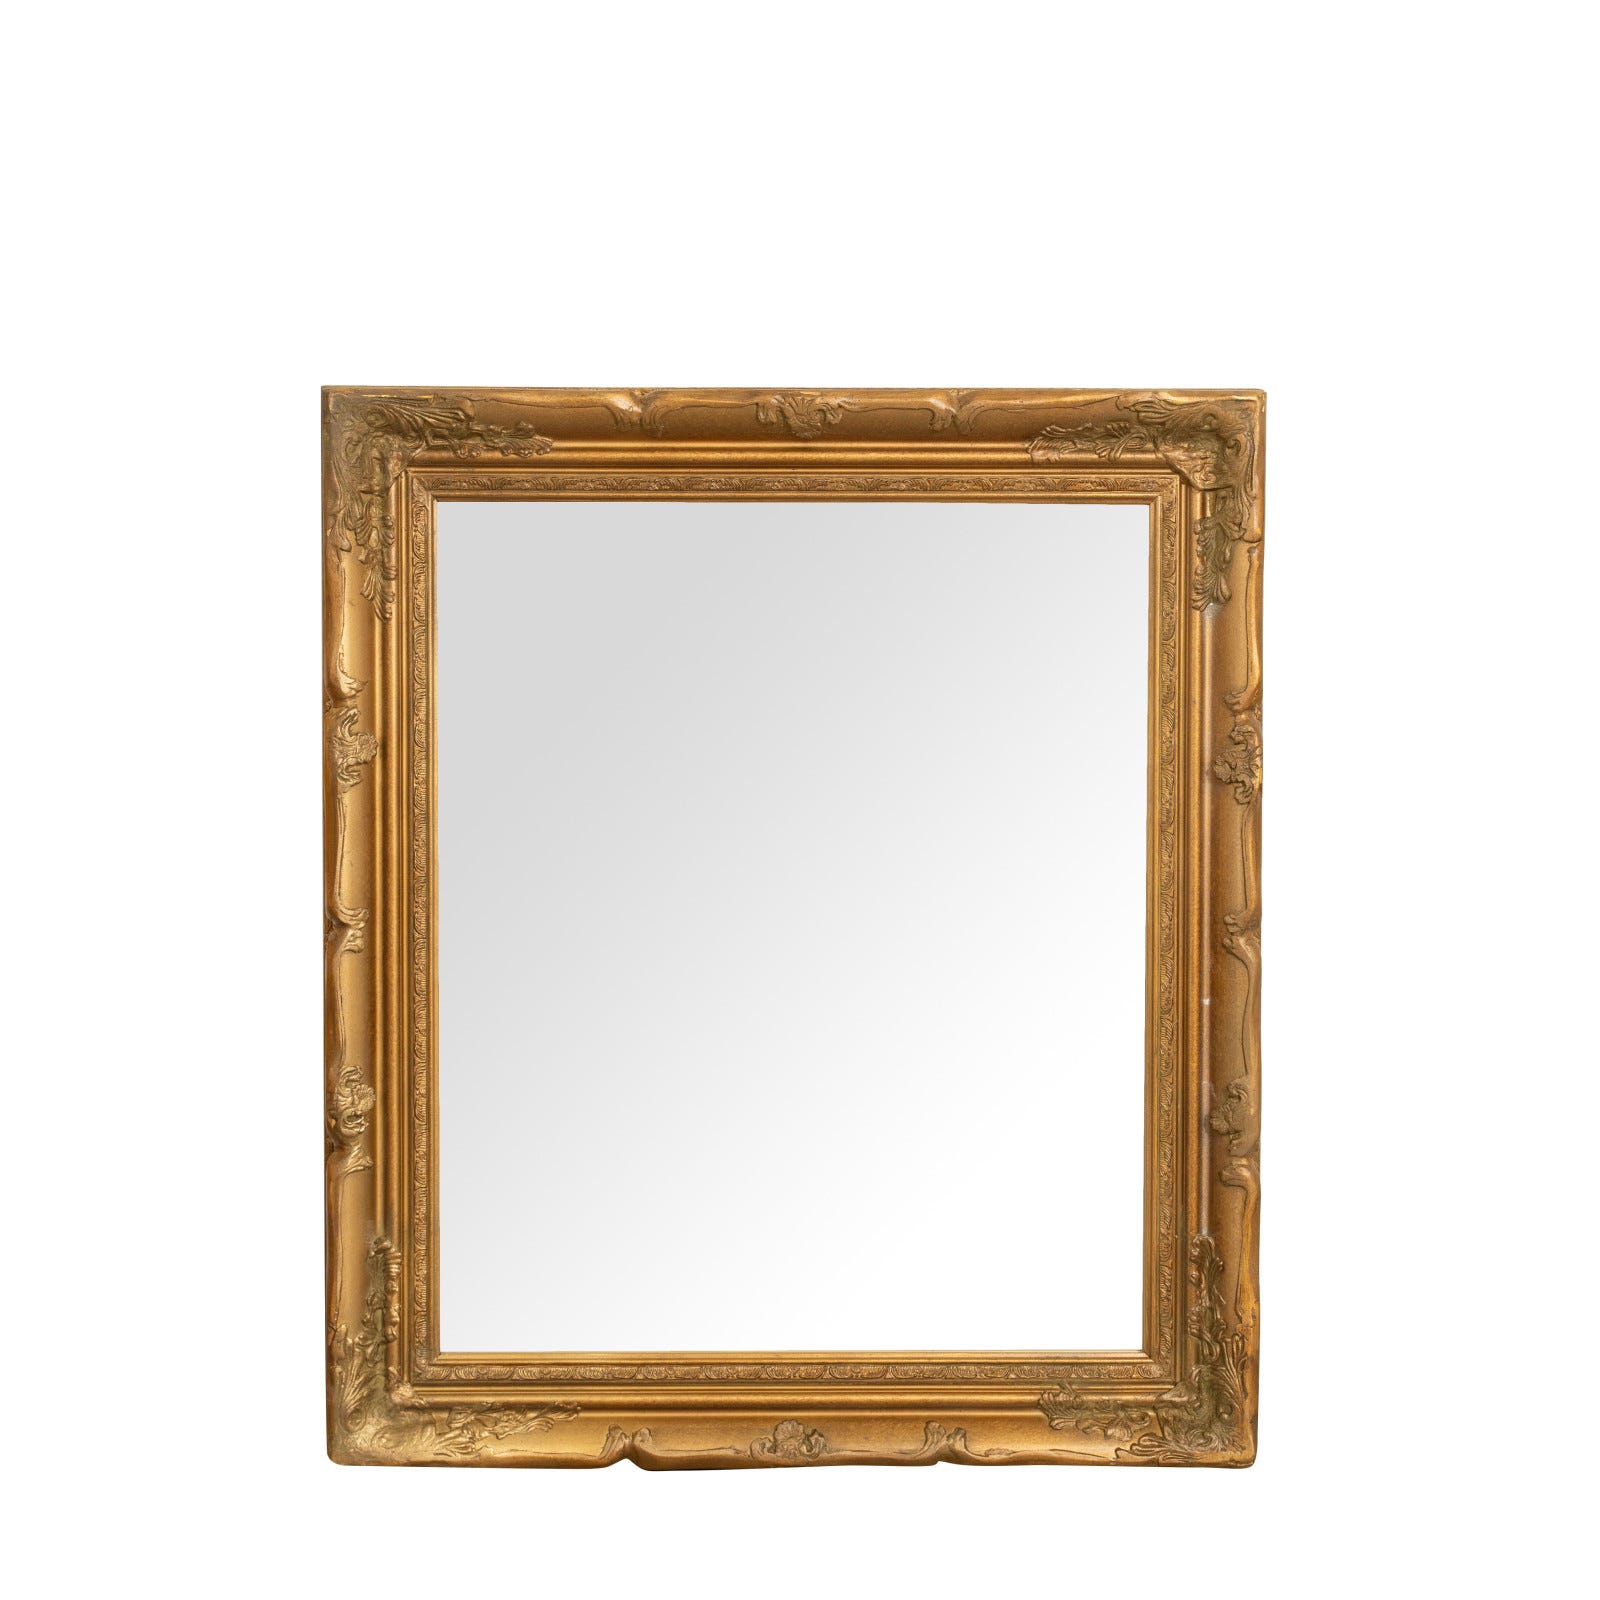 Specchio da parete 74x64x4 cm Made in Italy, Specchio shabby, Specchiera  bagno color oro anticato, Specchio vintage da parete